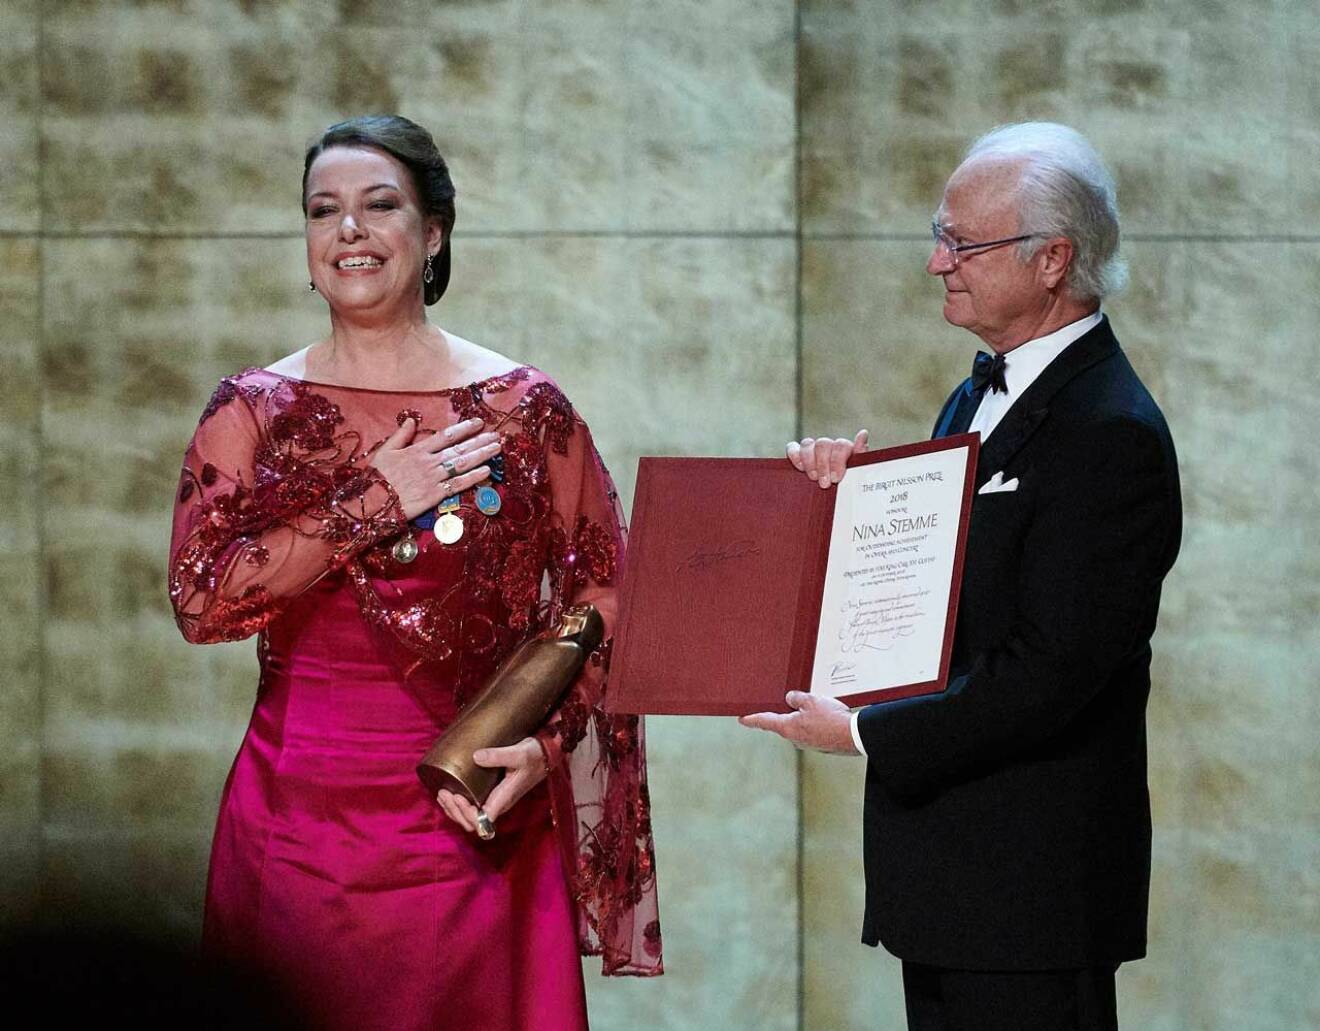 Jubel för Nina Stemme när Birgit Nilsson Prize 2018 delades ut. ! Hon är dramatisk sopran och hyllades både av kungen och av operaeliten på plats.